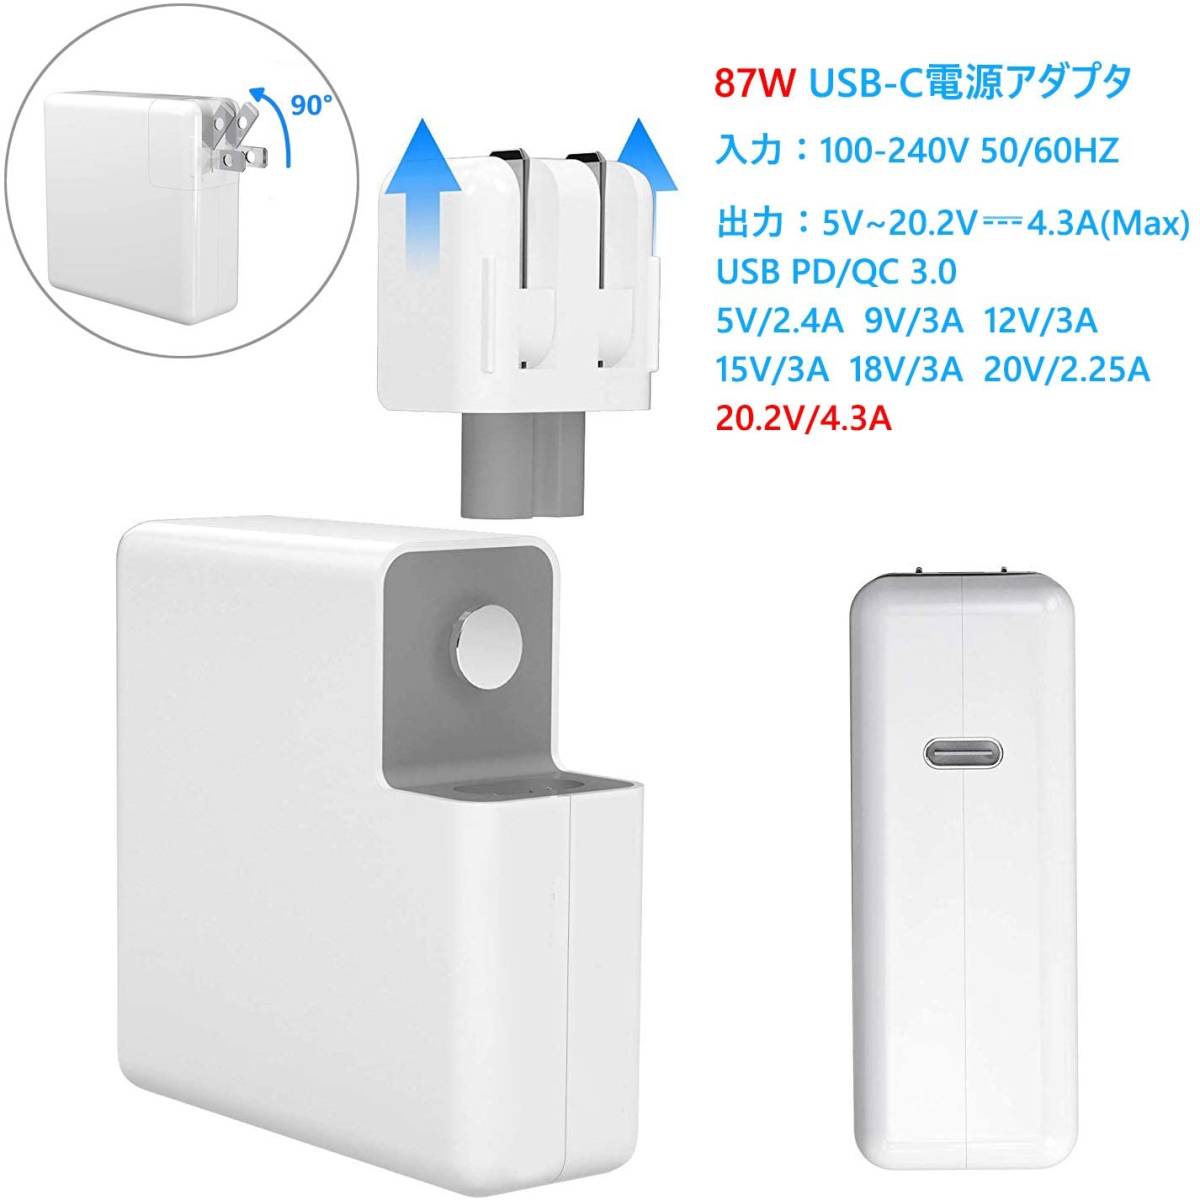 87W USB C 充電器 Macbook Pro Type-C アダプター PD タイプ-C 電源アダプタ Type C 急速充電器_画像3